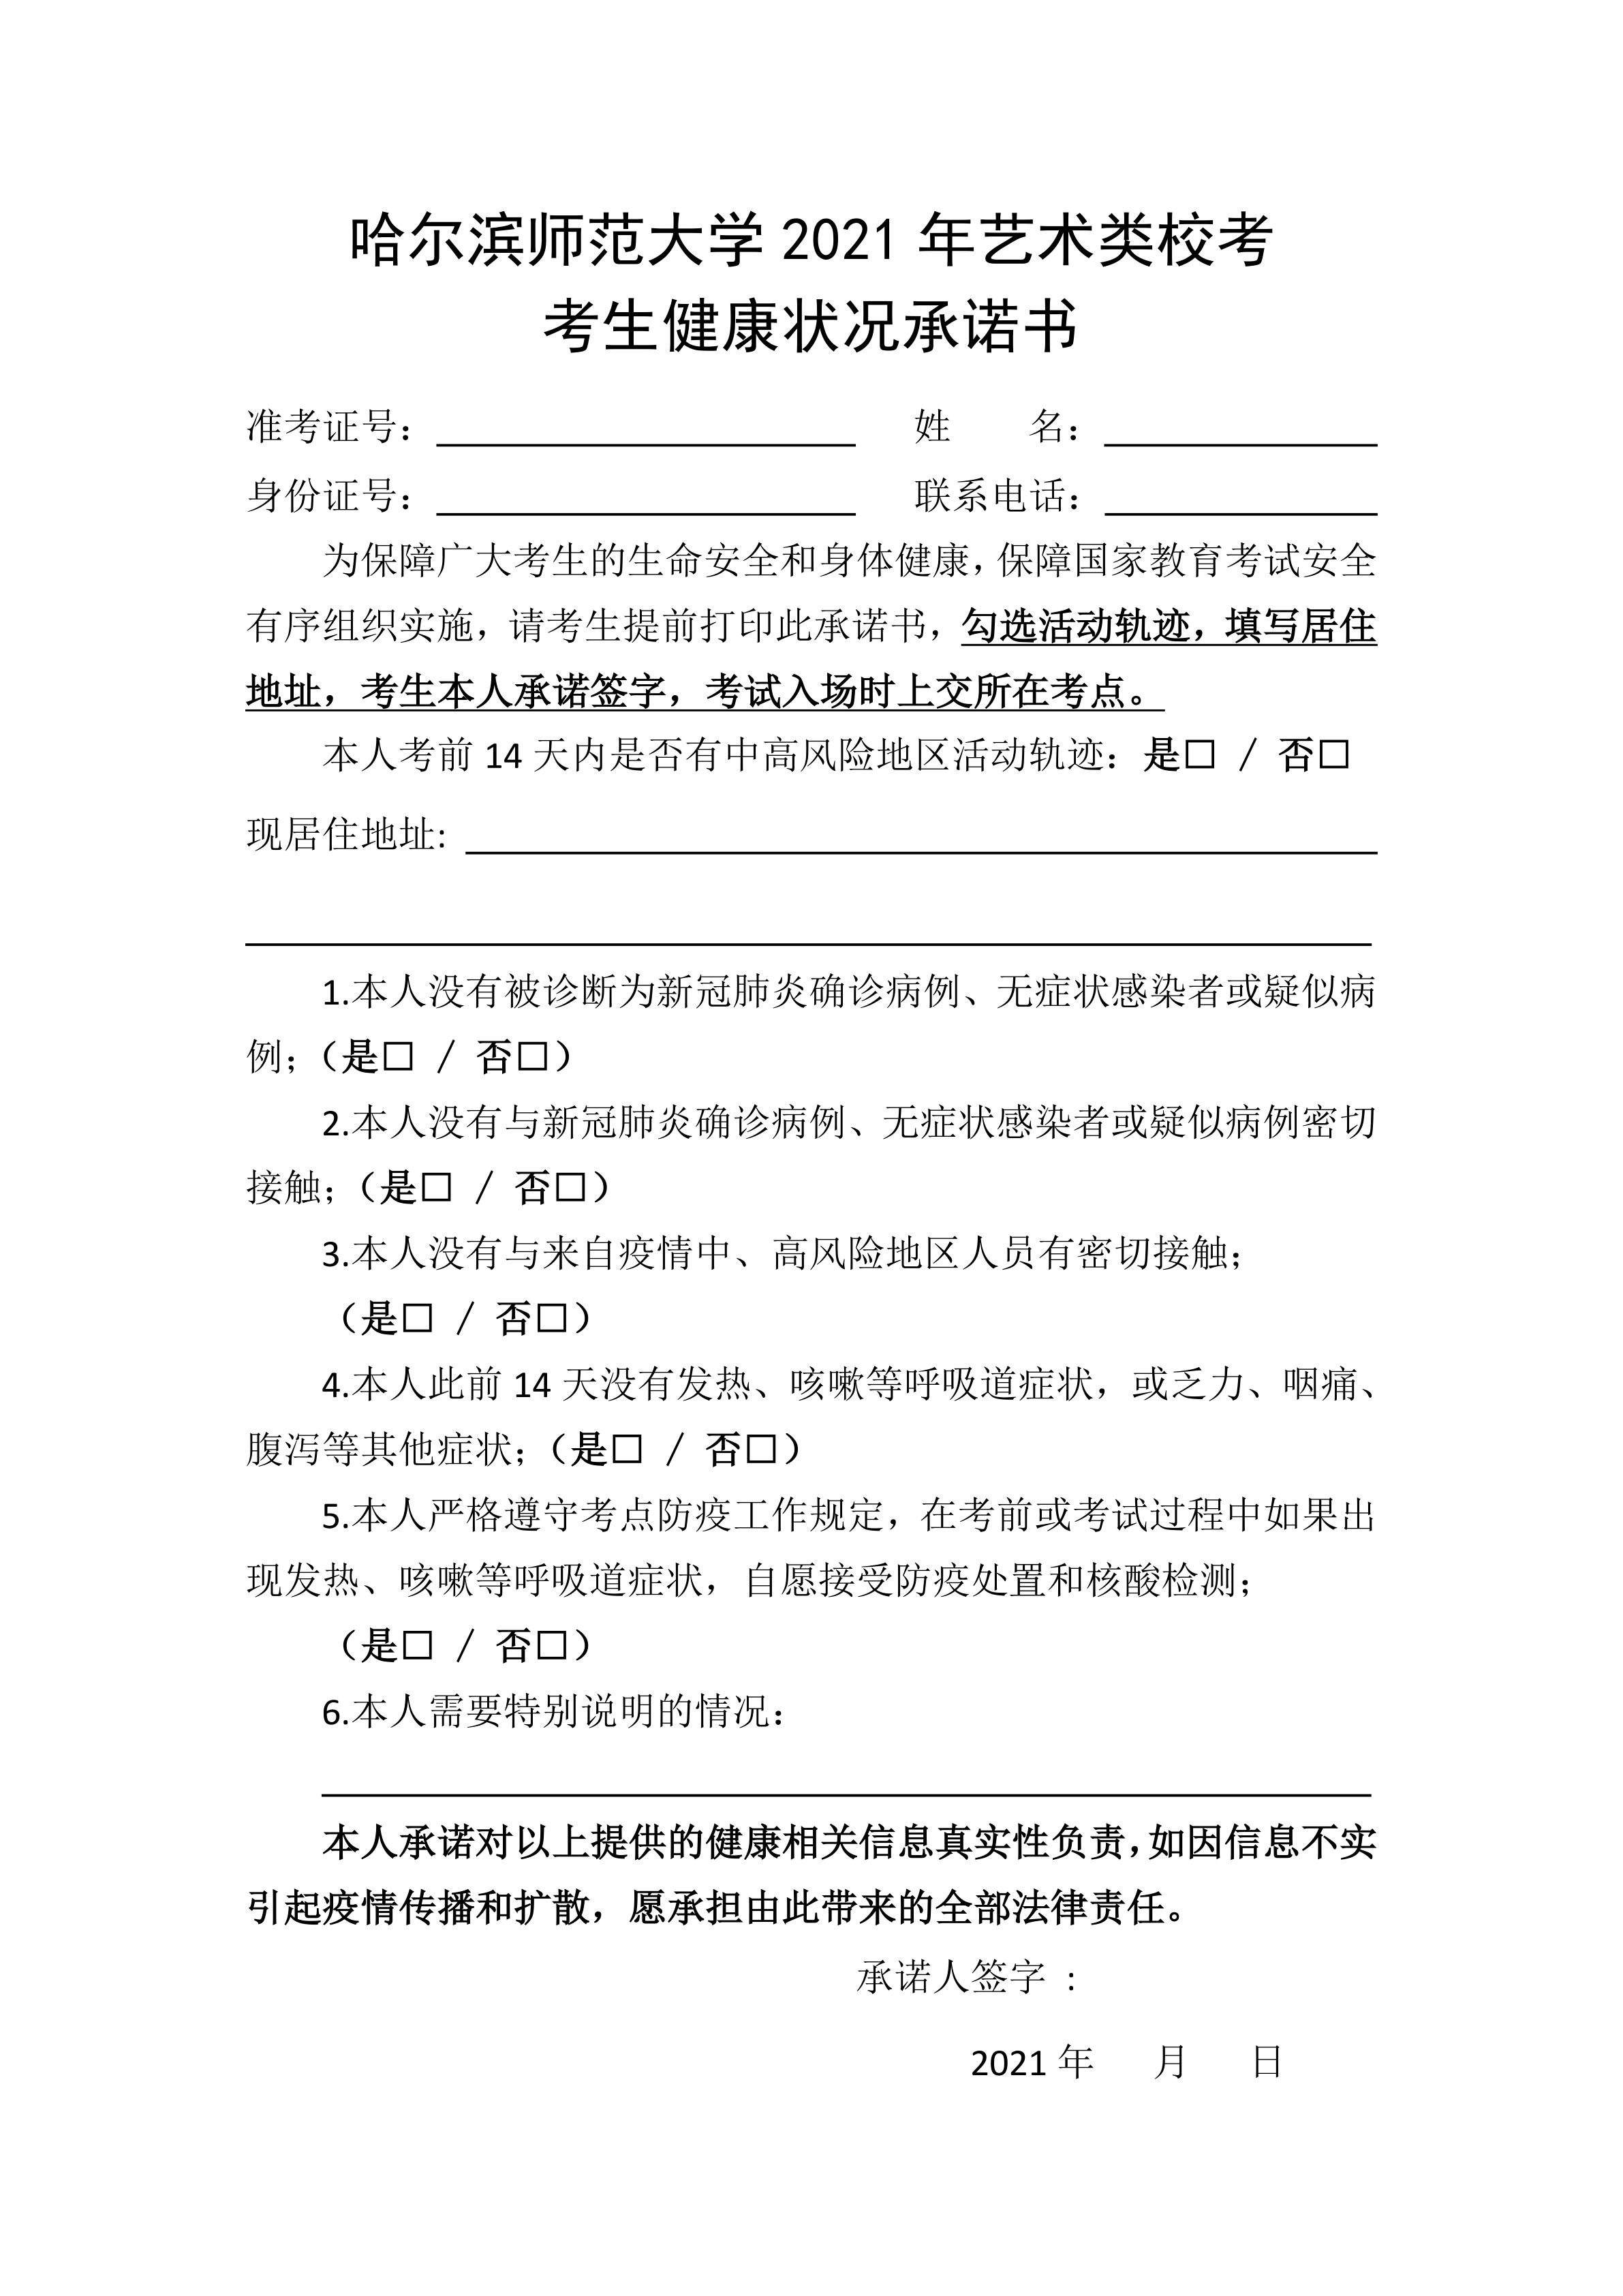 004-附件4：哈尔滨师范大学2021年艺术类校考考试考生健康状况承诺书_1.png